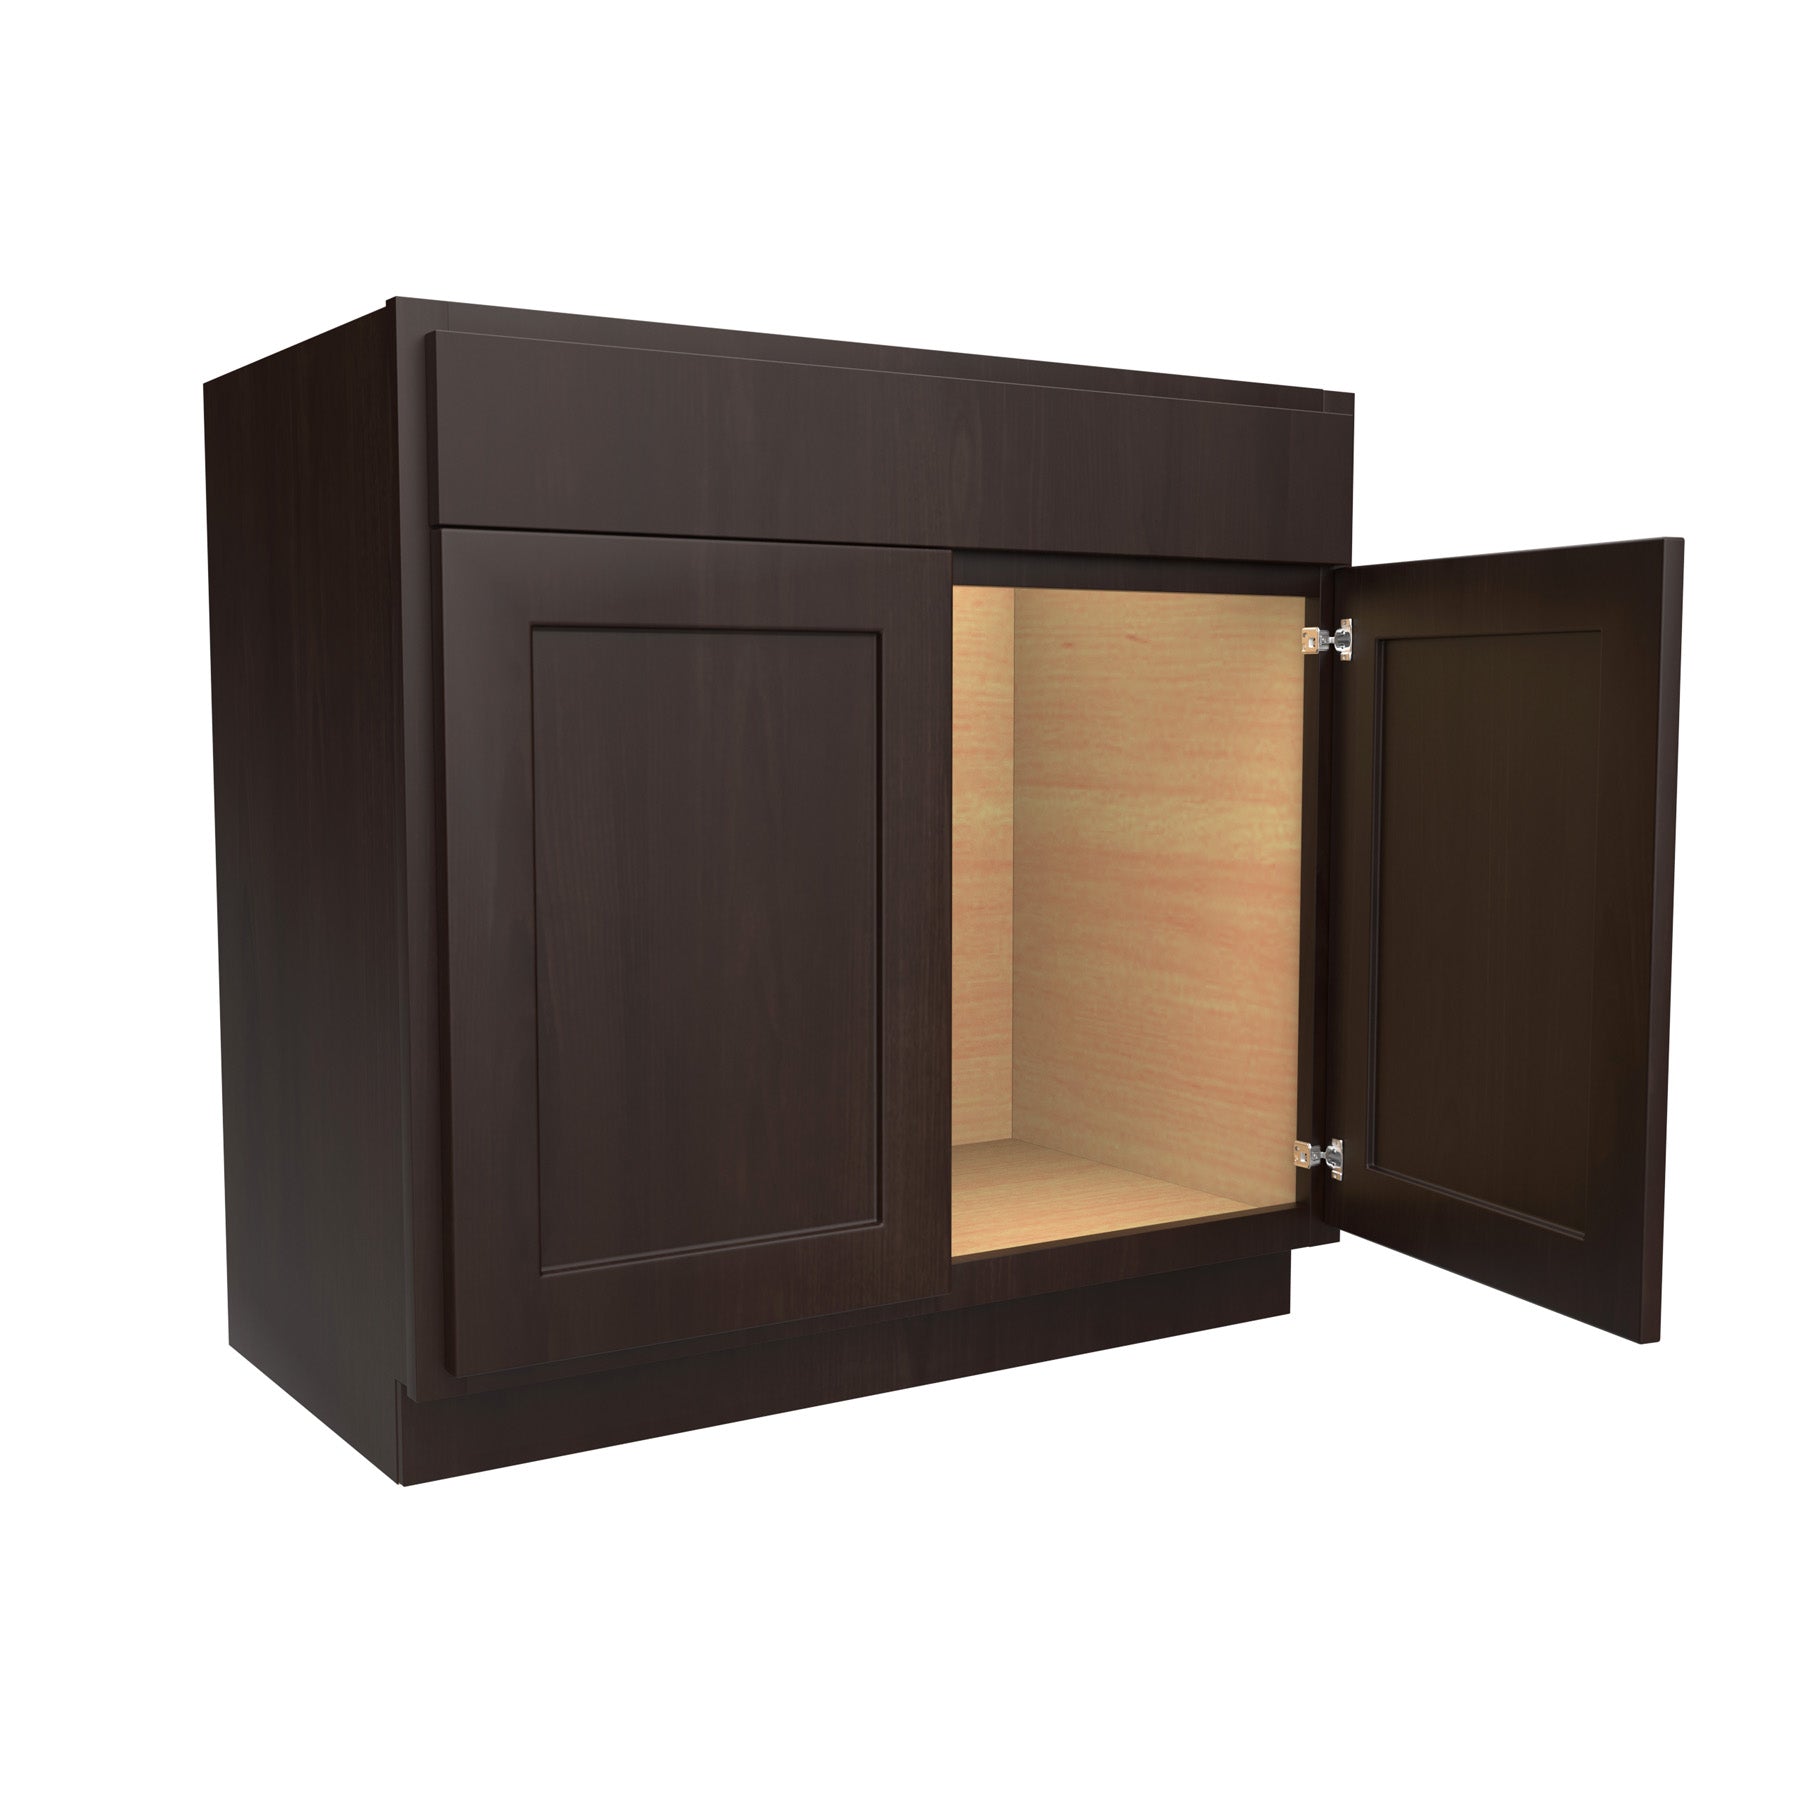 RTA Luxor Espresso - Double Door Vanity Sink Base Cabinet | 36"W x 34.5"H x 21"D